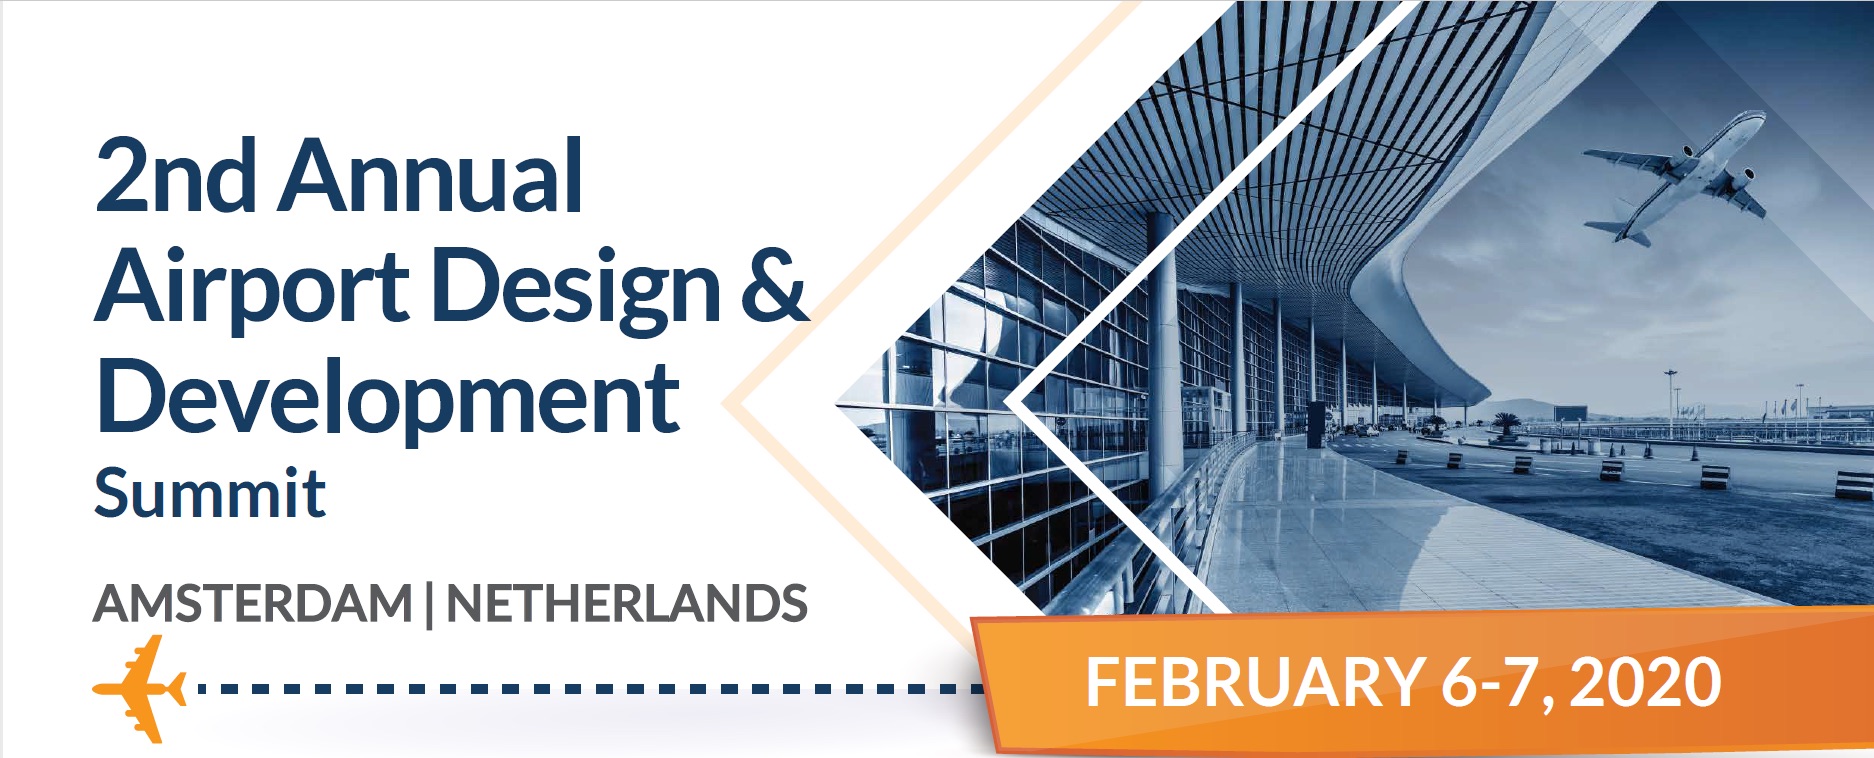 2nd Annual Airport Design & Development Summit